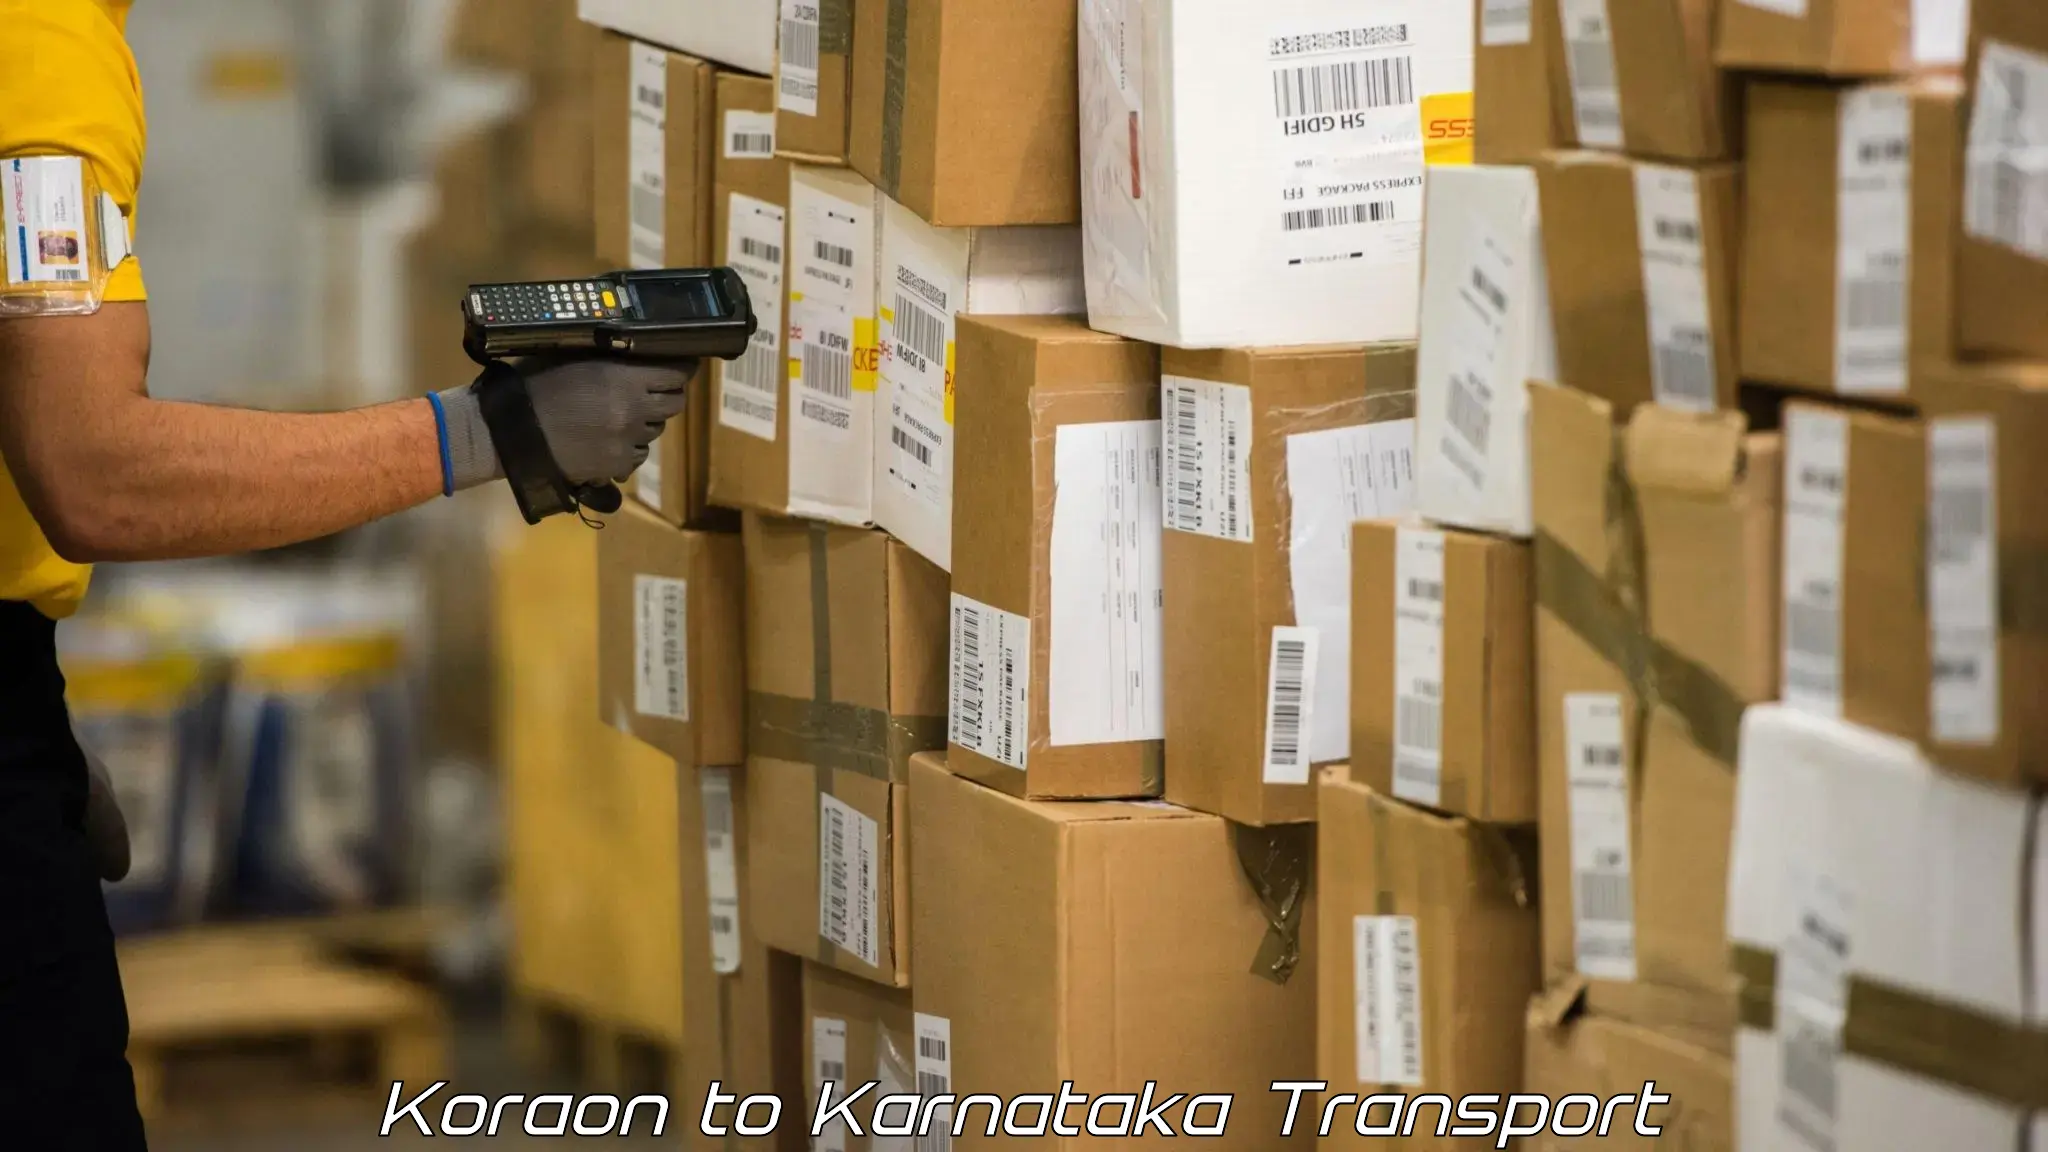 Daily parcel service transport Koraon to Khanapur Karnataka